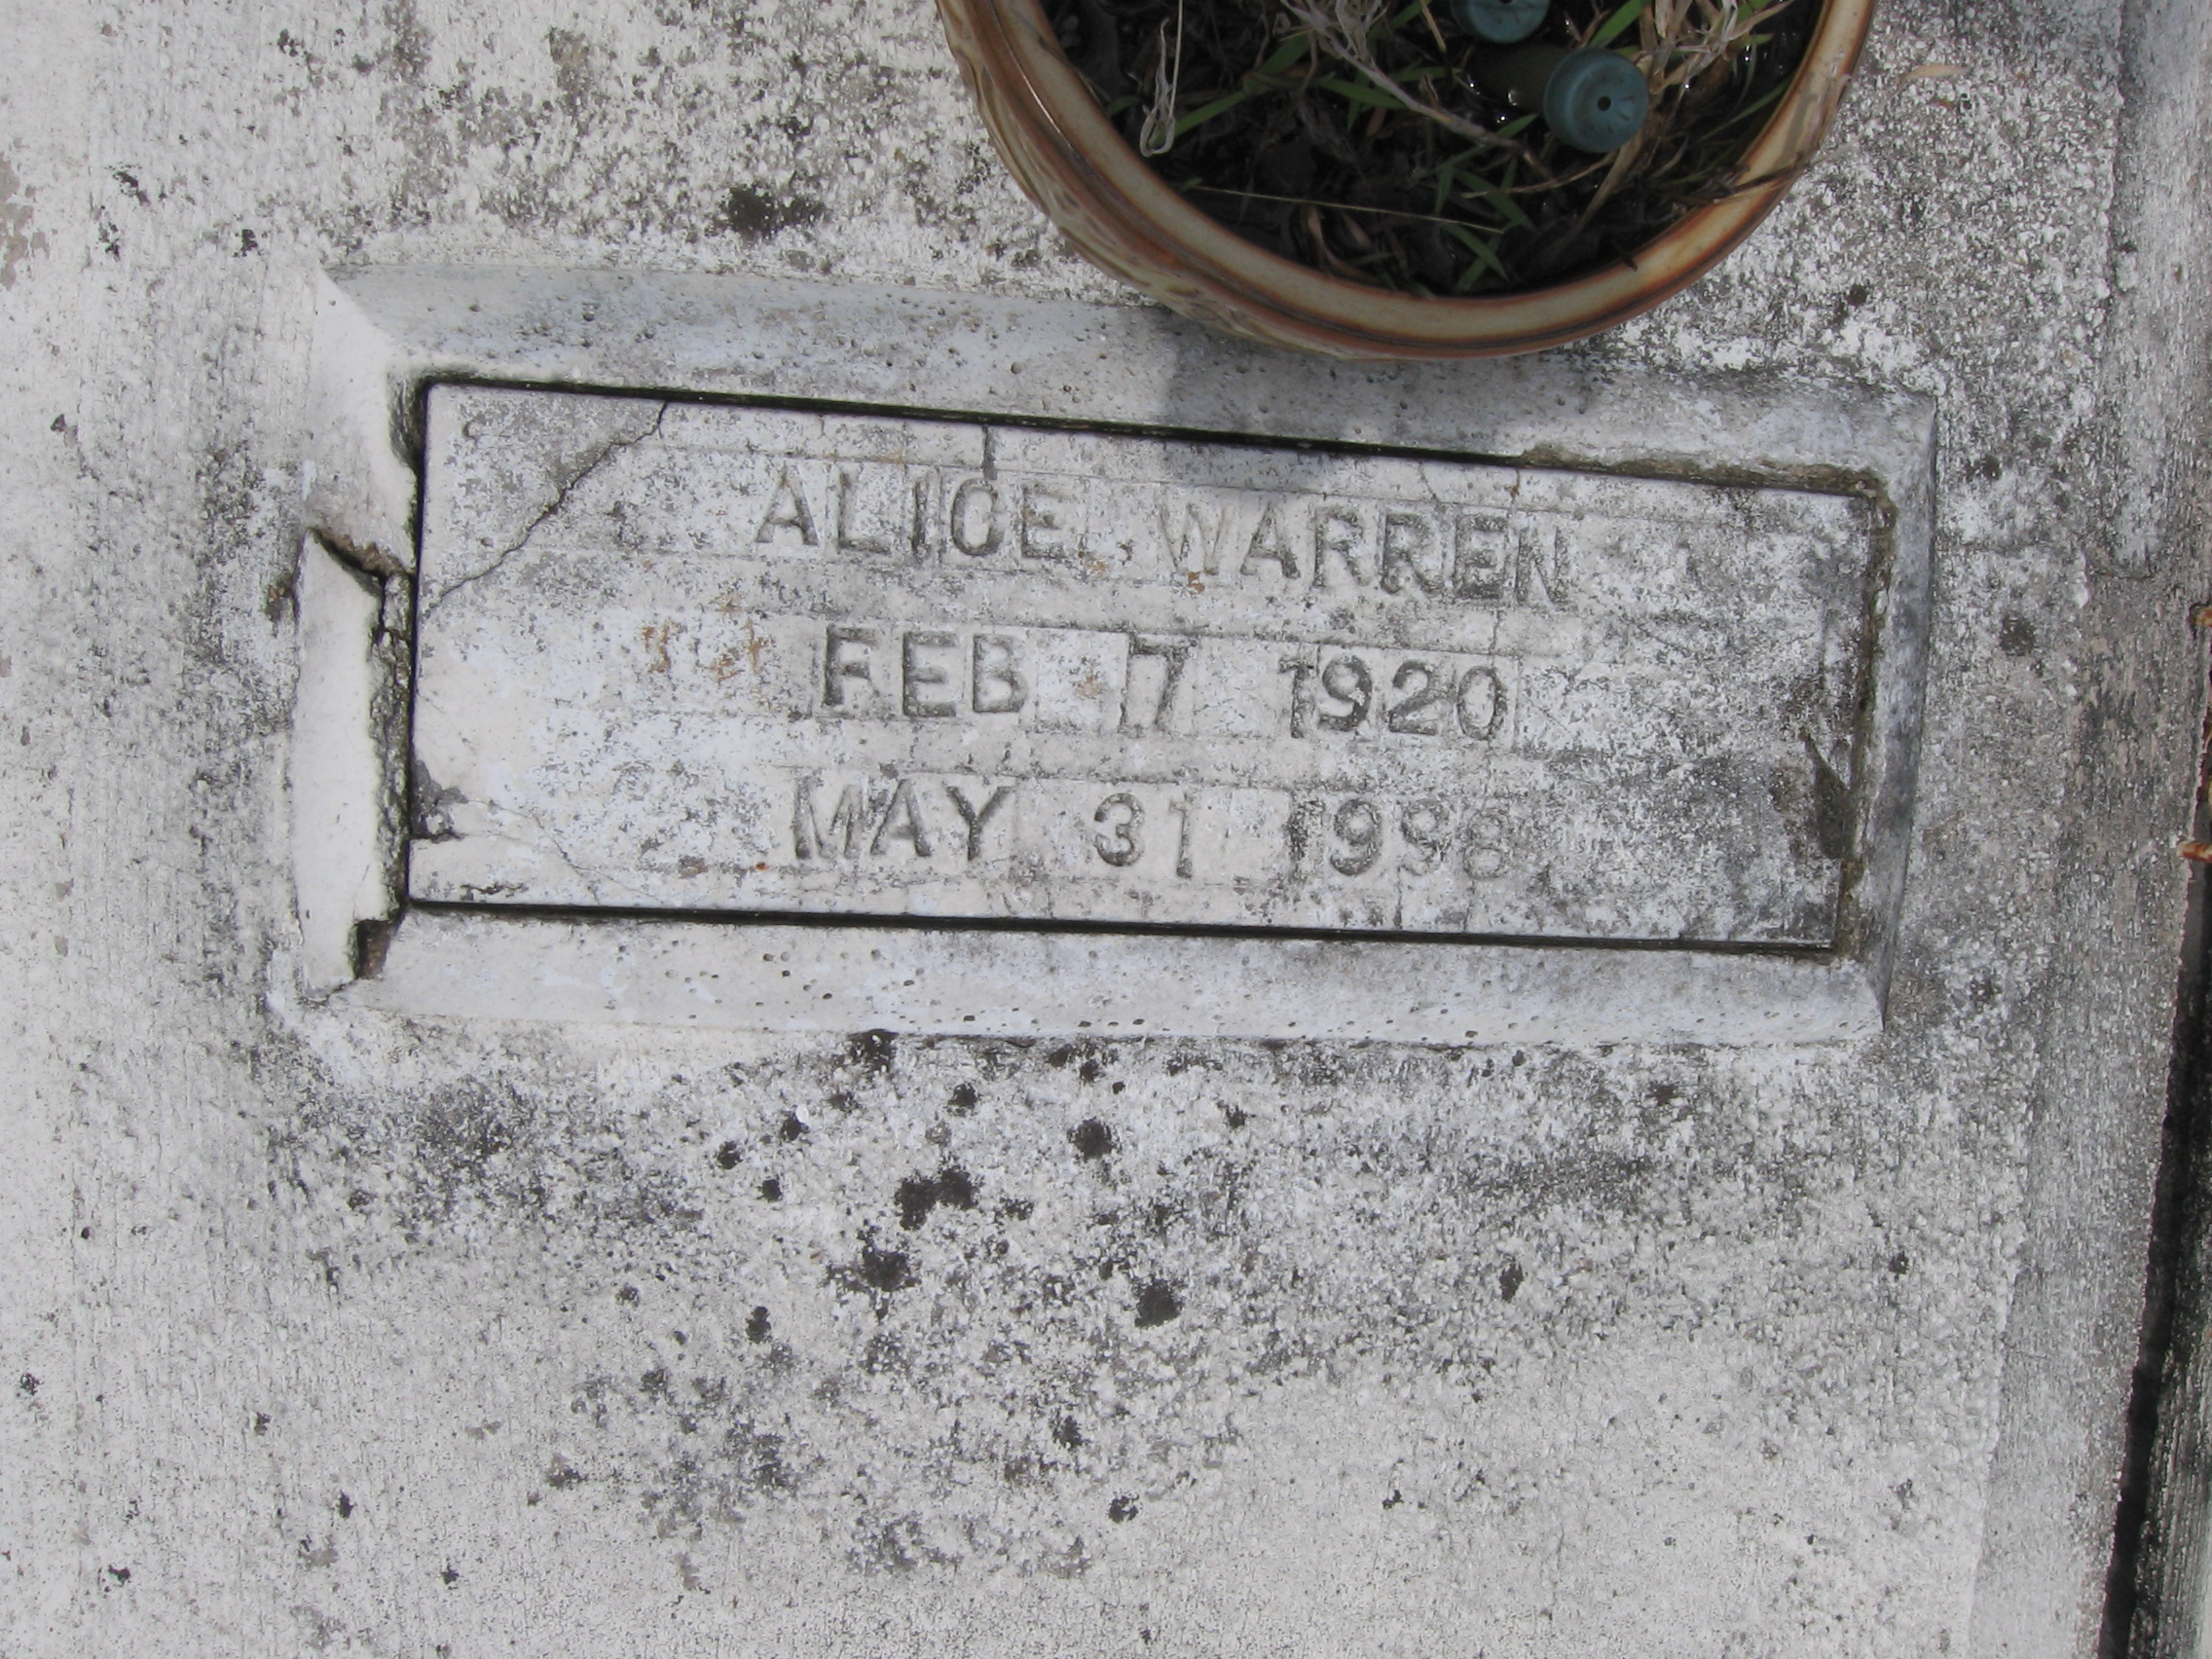 Alice Warren